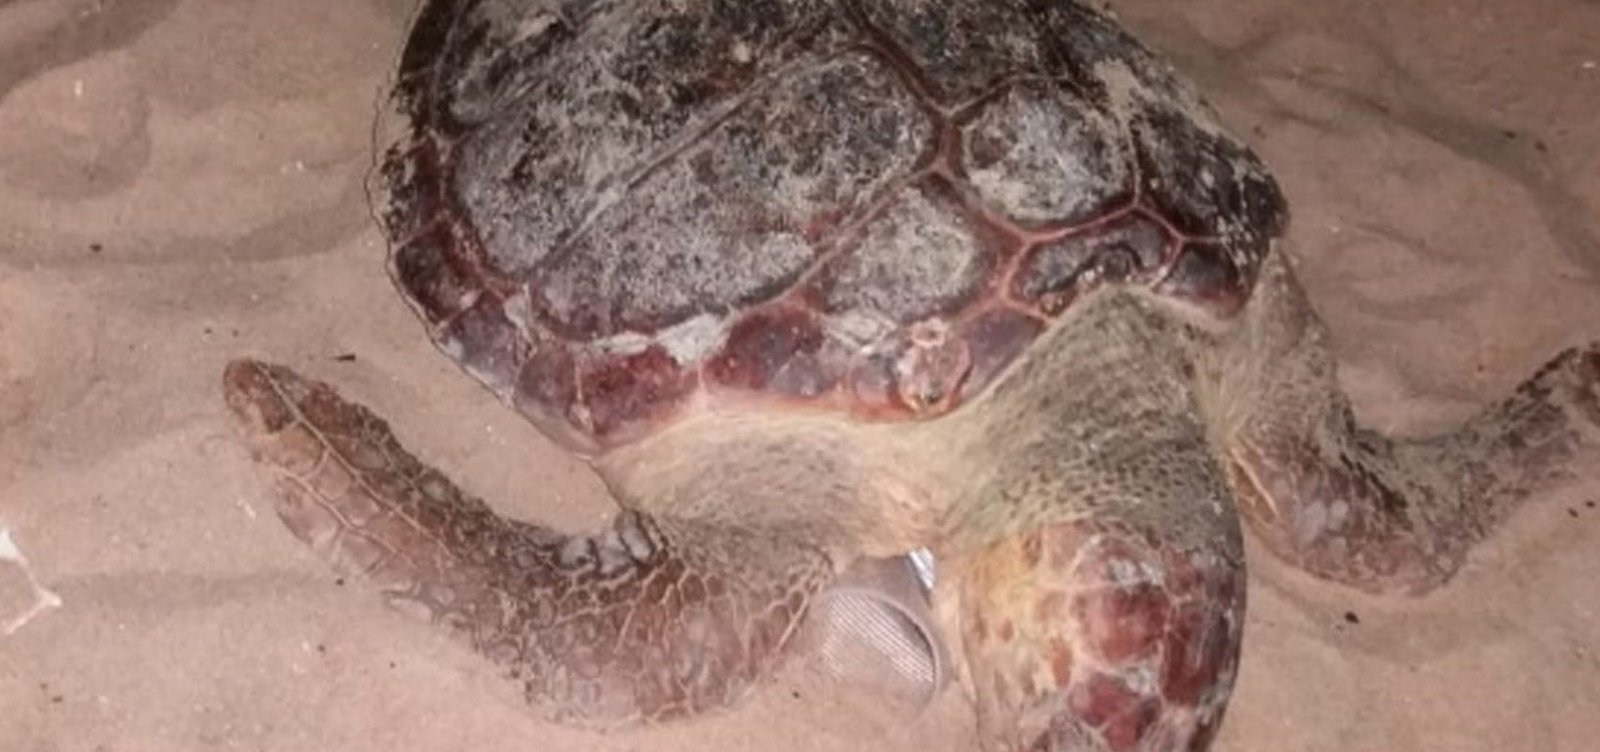 Tartaruga é encontrada morta na praia de Boa Viagem, em Salvador